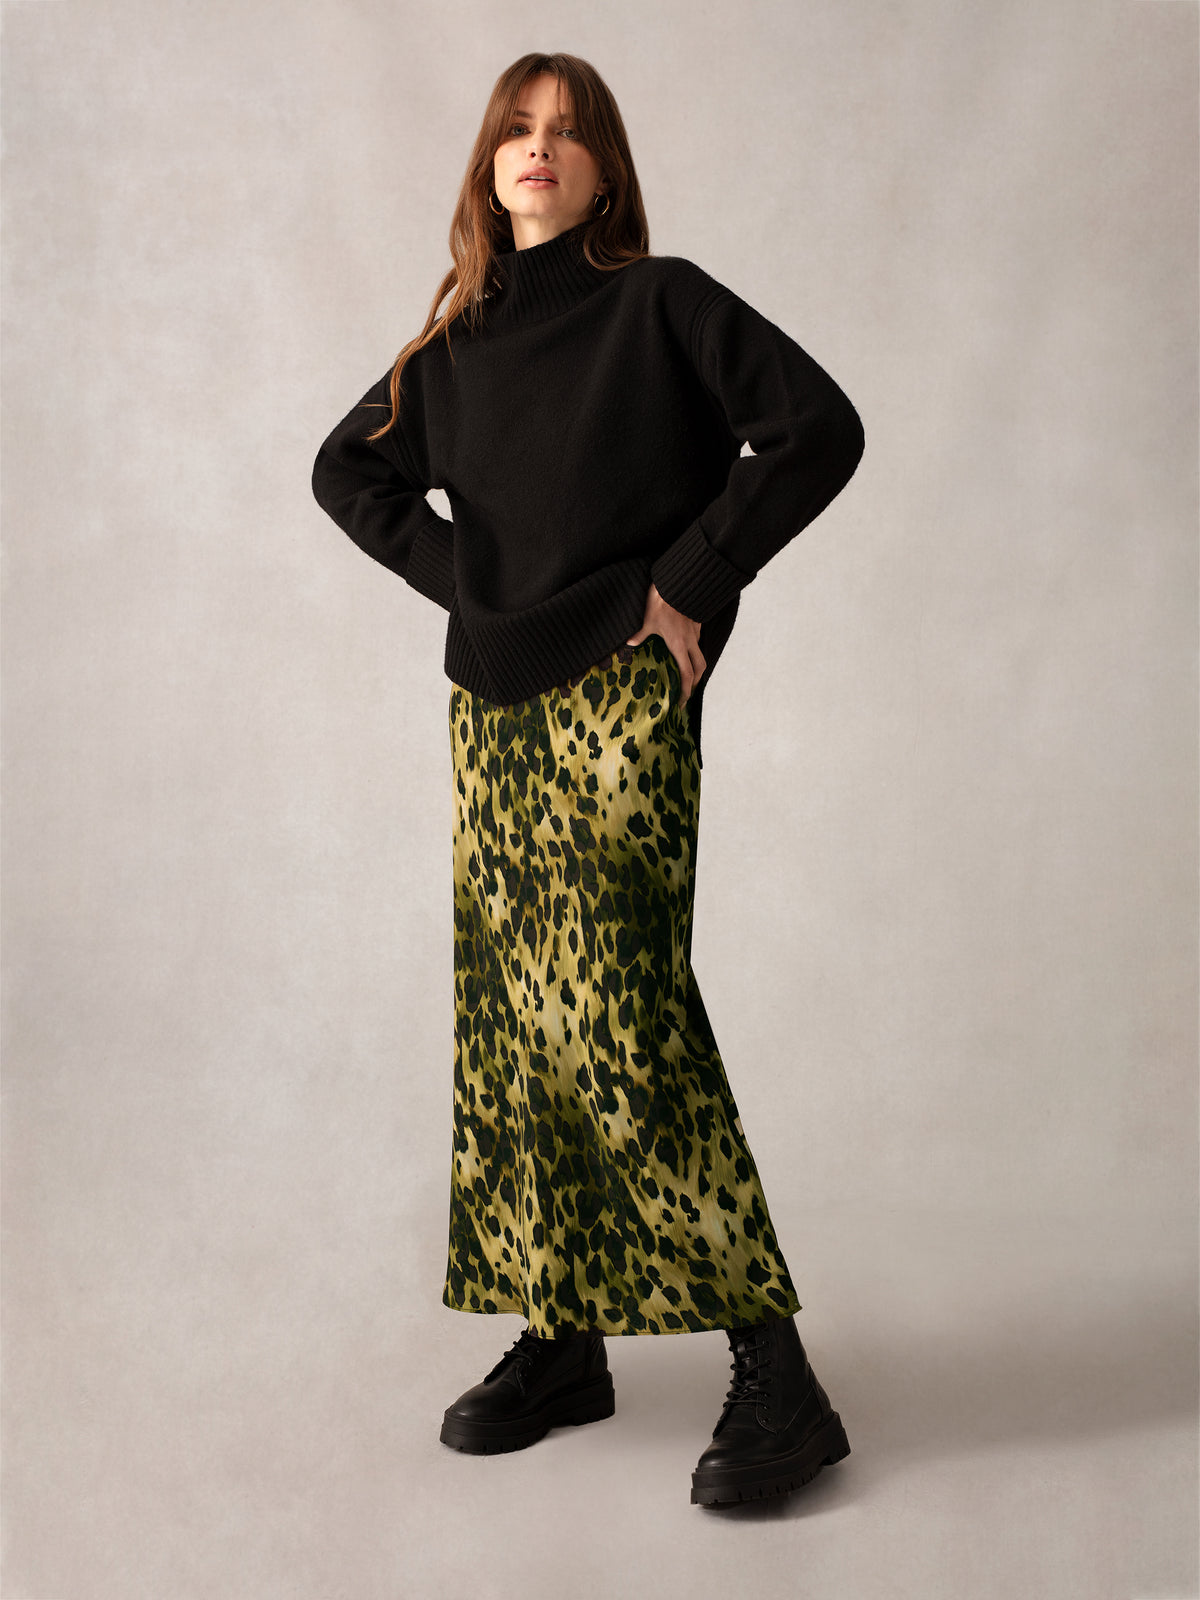 Soft Leopard Bias Cut Skirt